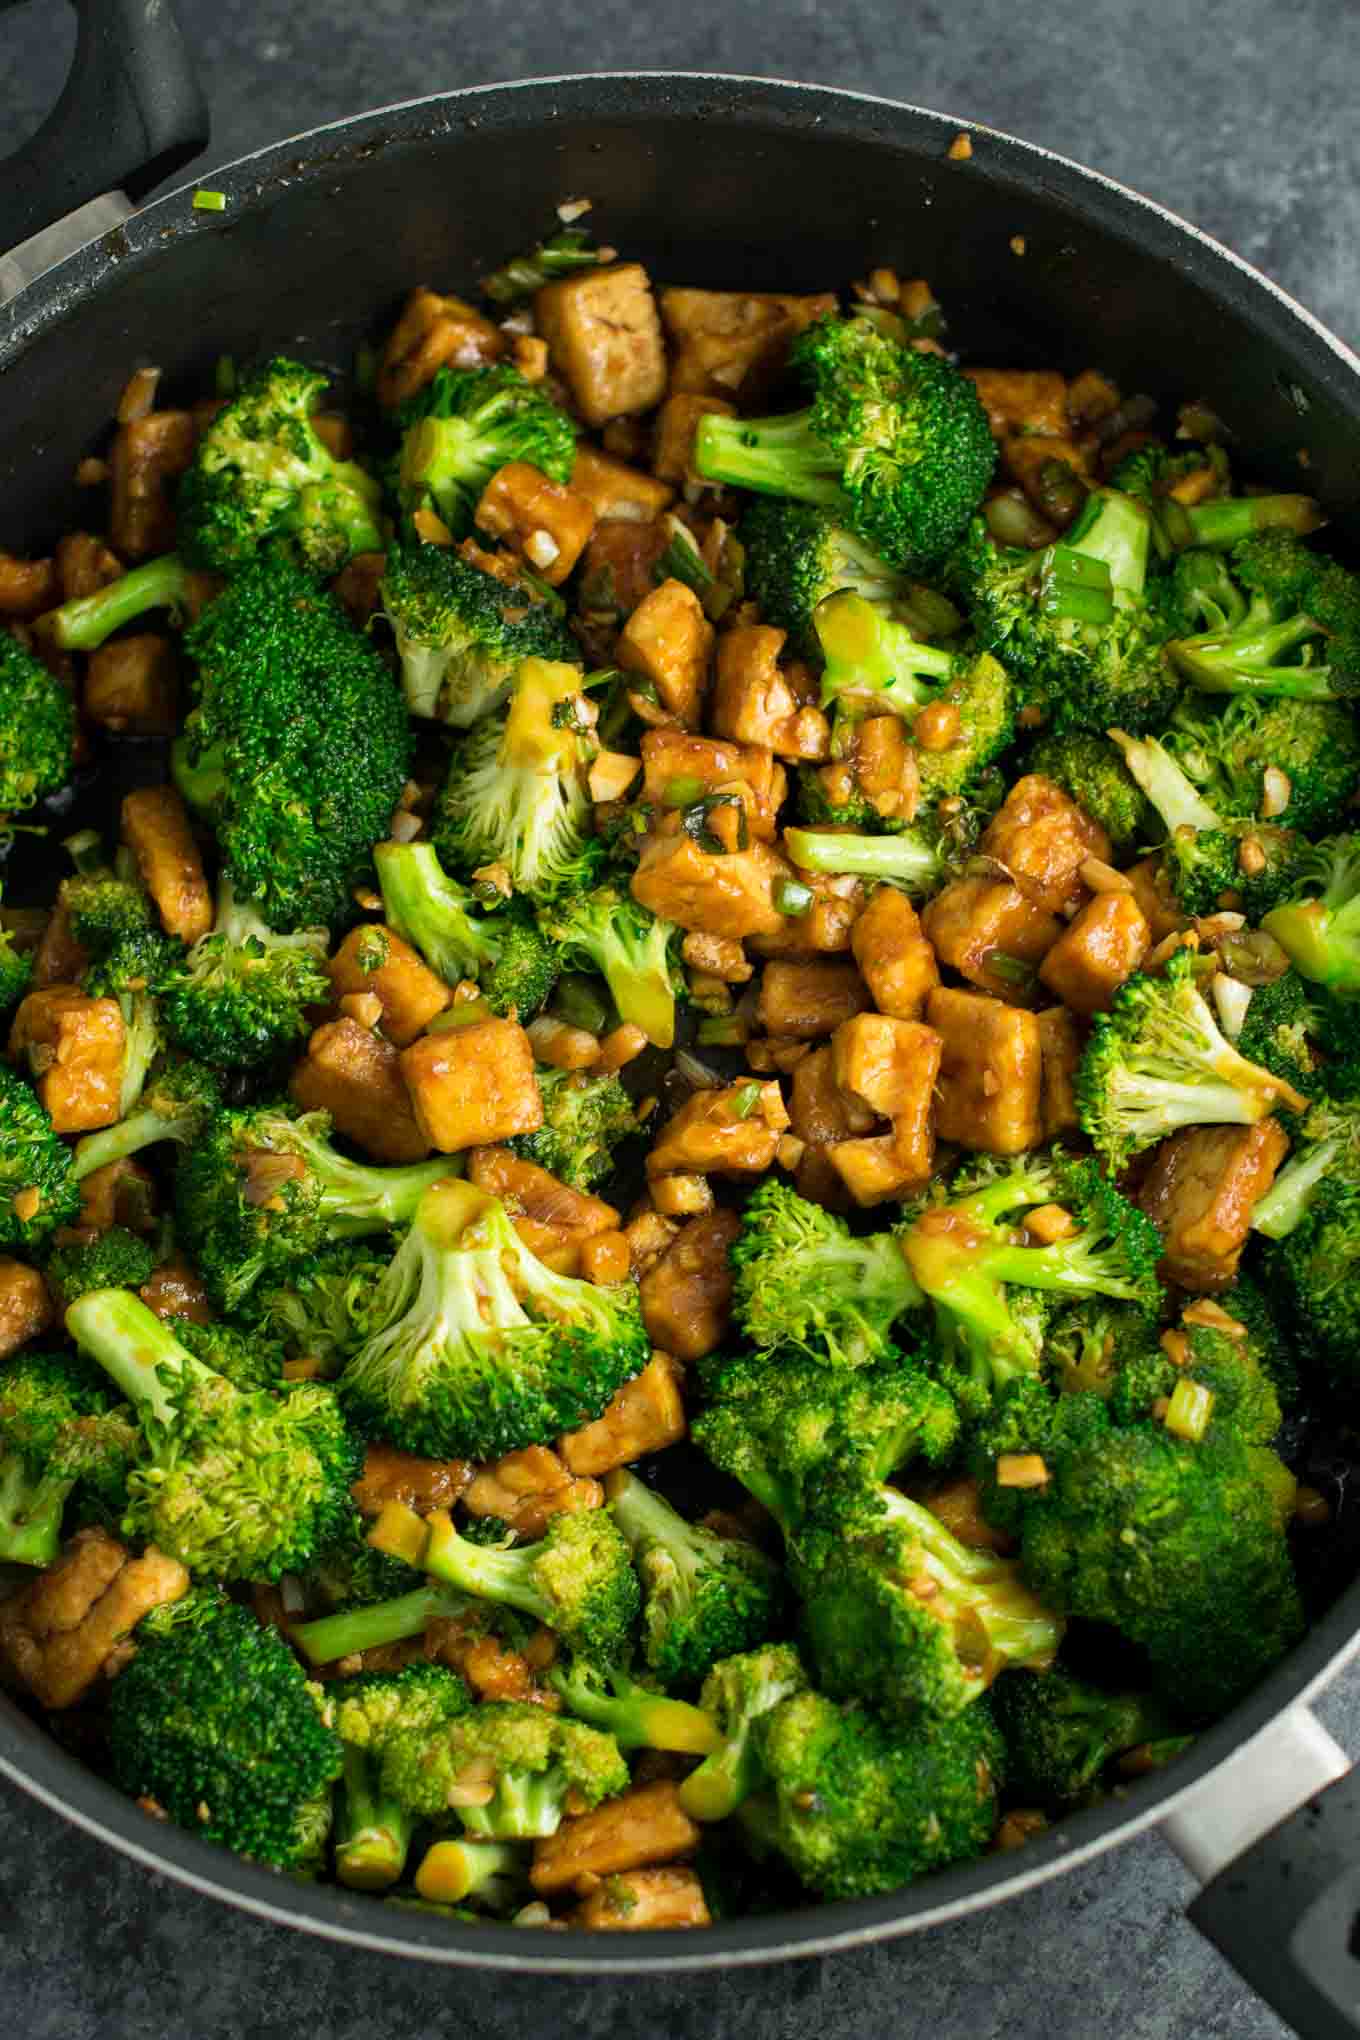 Garlic Tofu Broccoli Skillet Recipe - vegan, gluten free